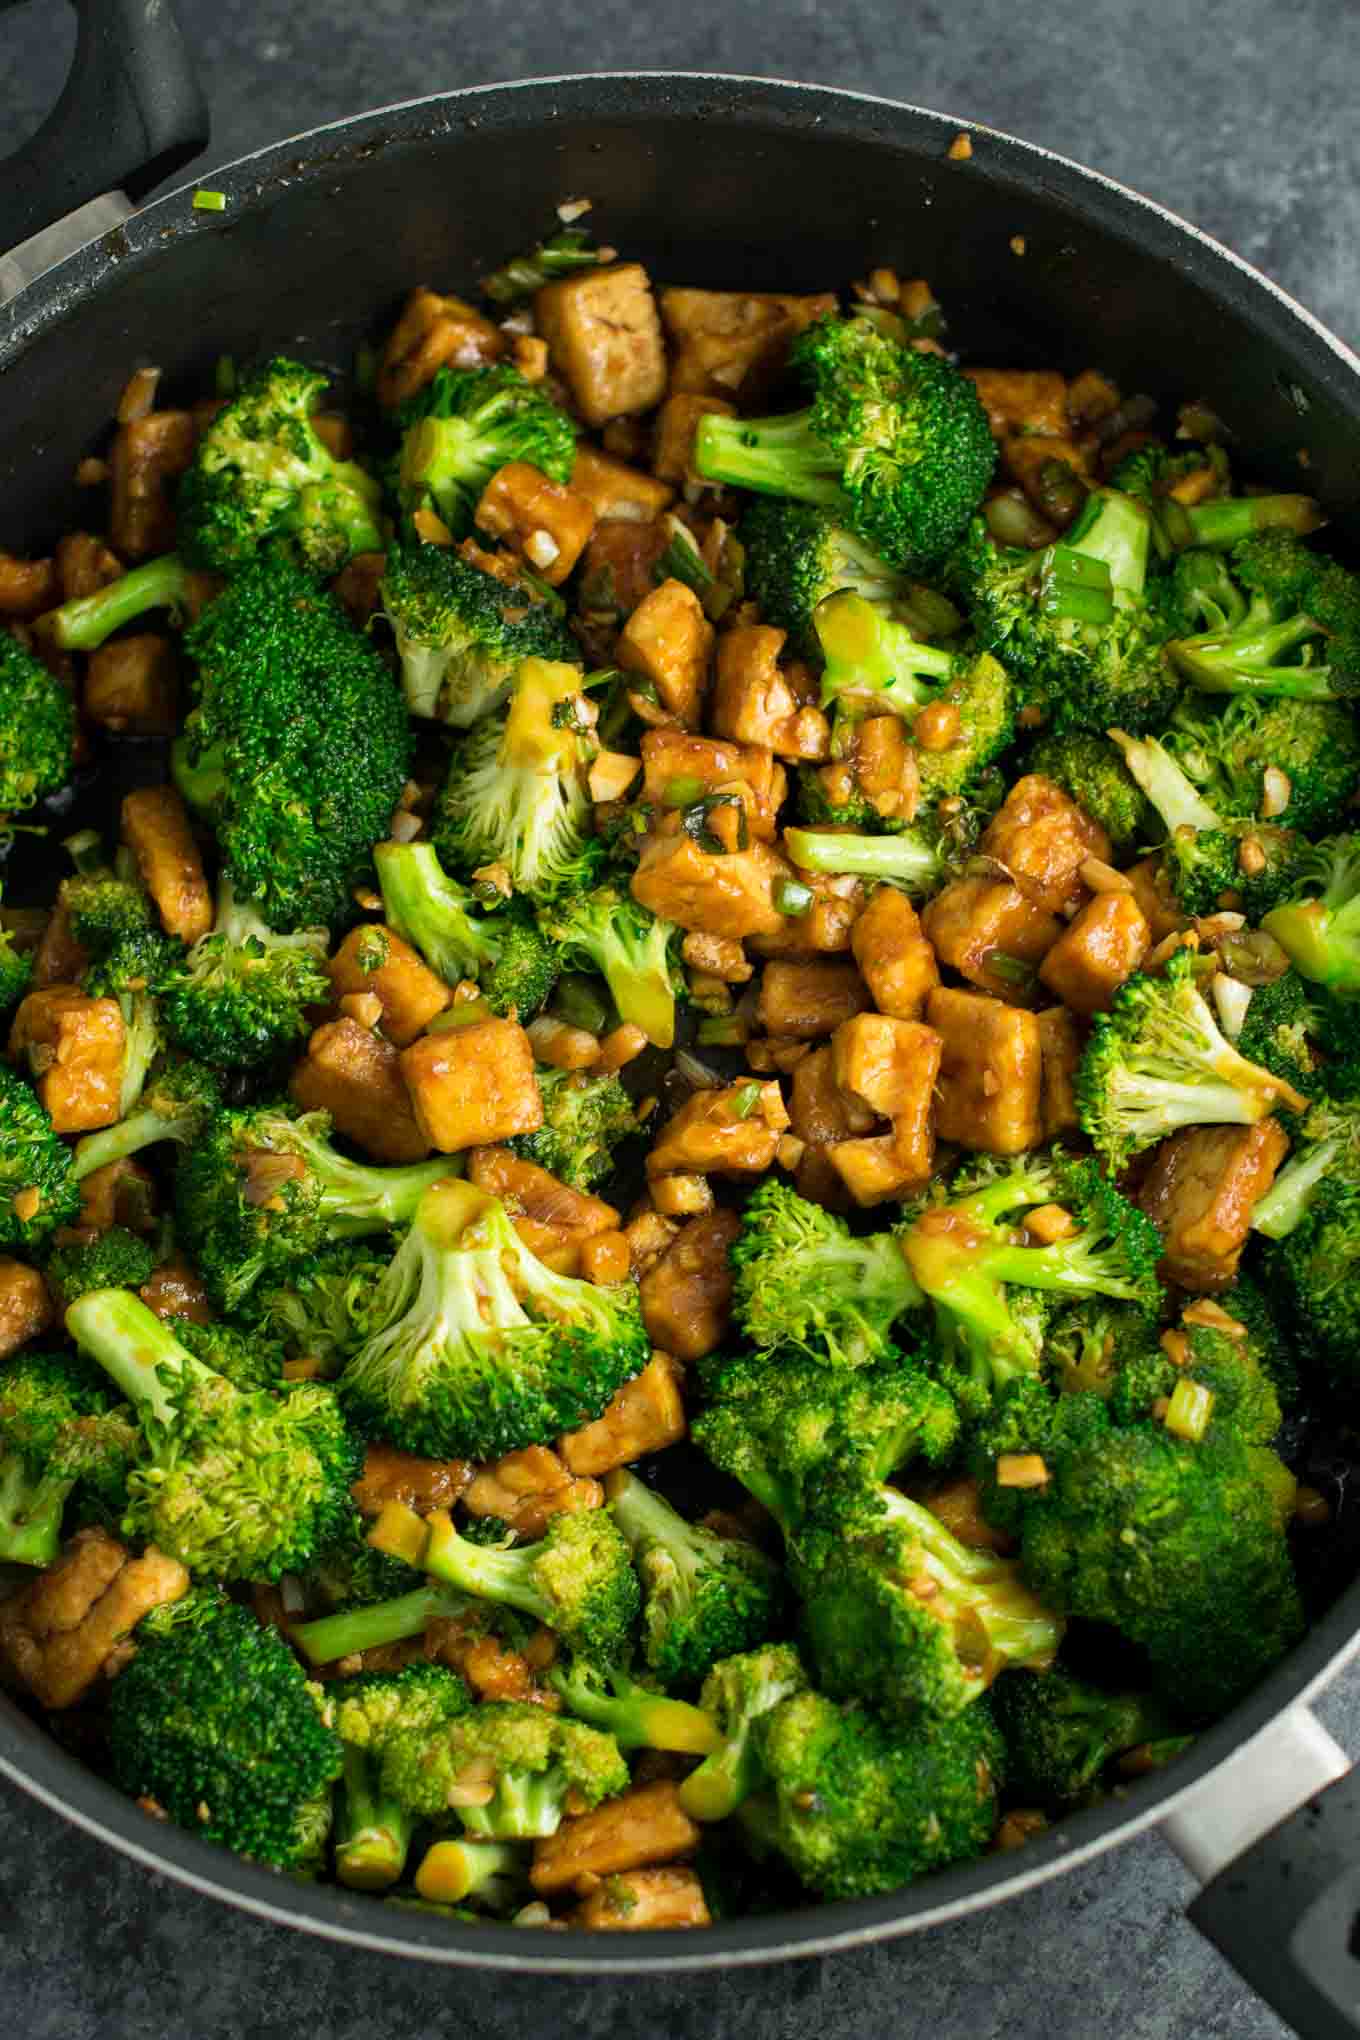 Garlic Tofu Broccoli Skillet Recipe - vegan, gluten free